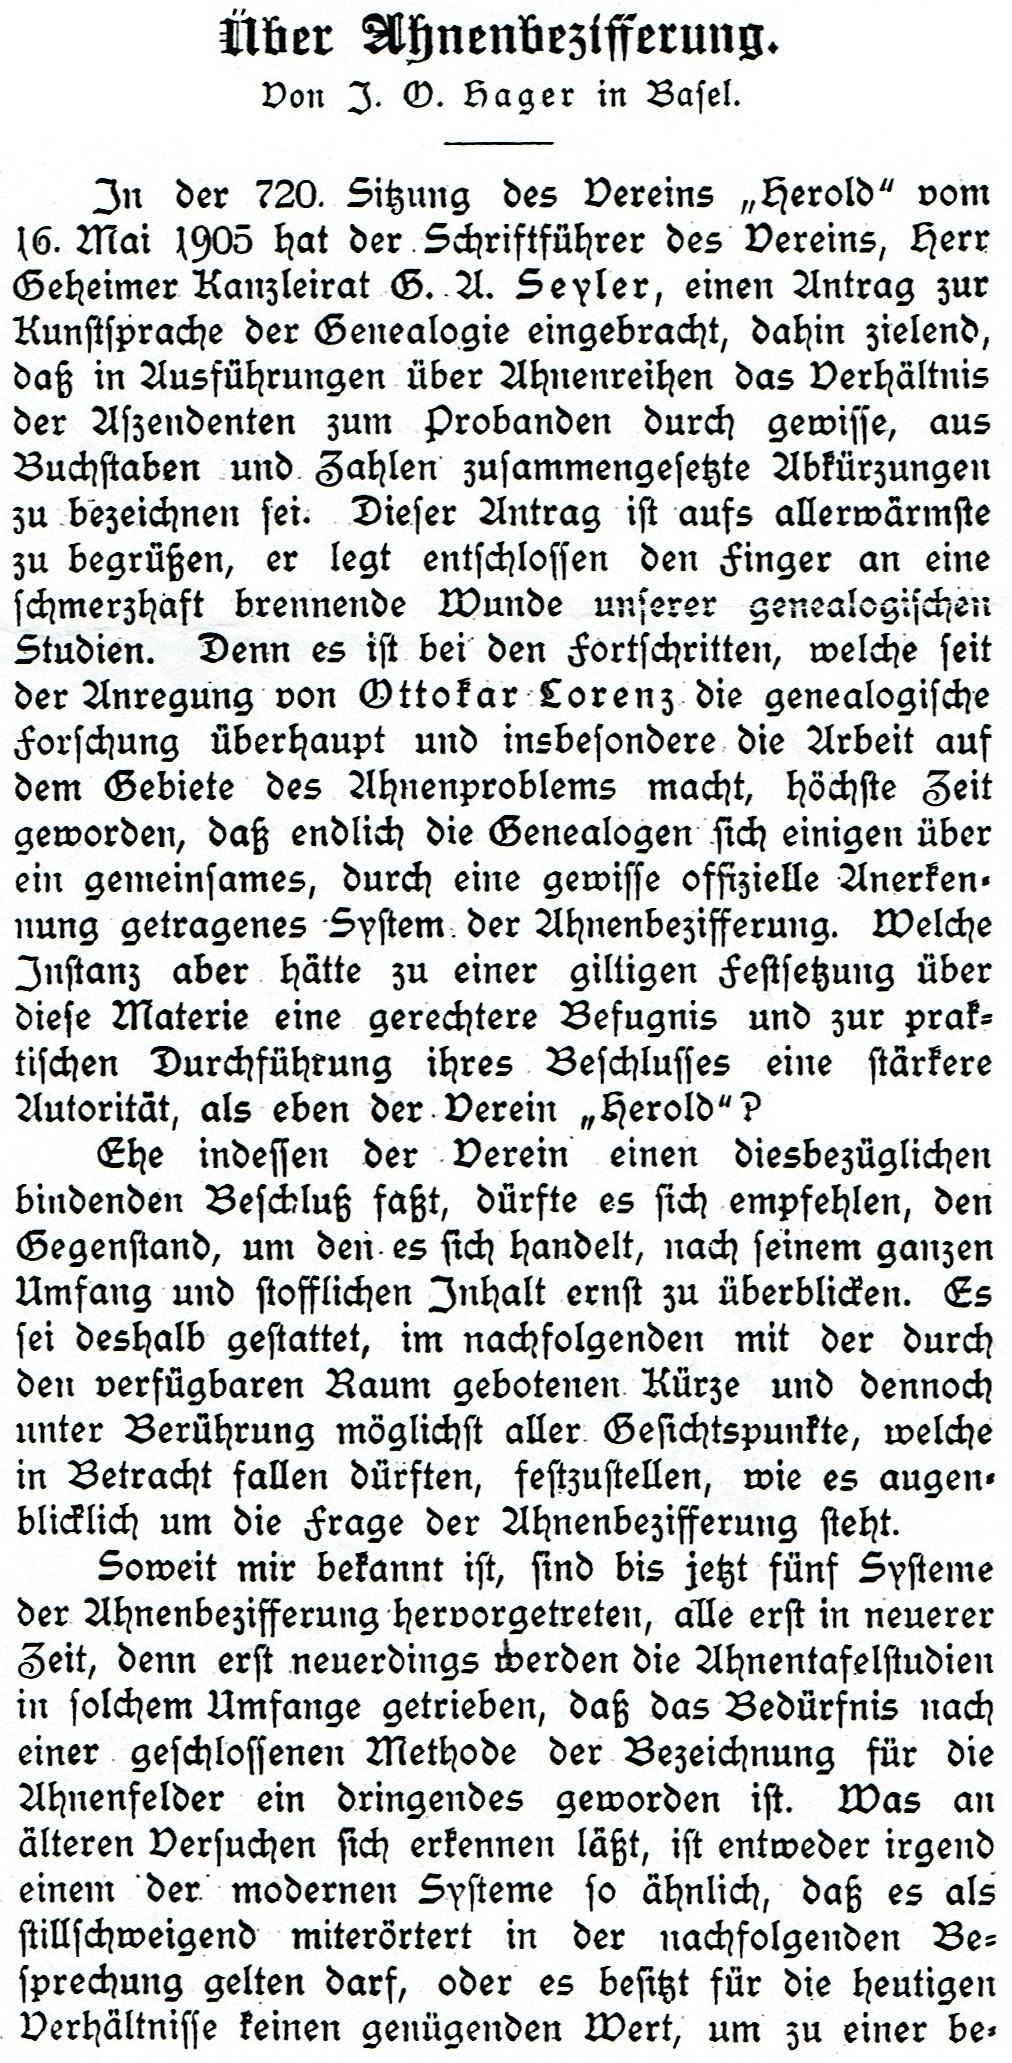 Hager (1905), Über Ahnenbezifferung